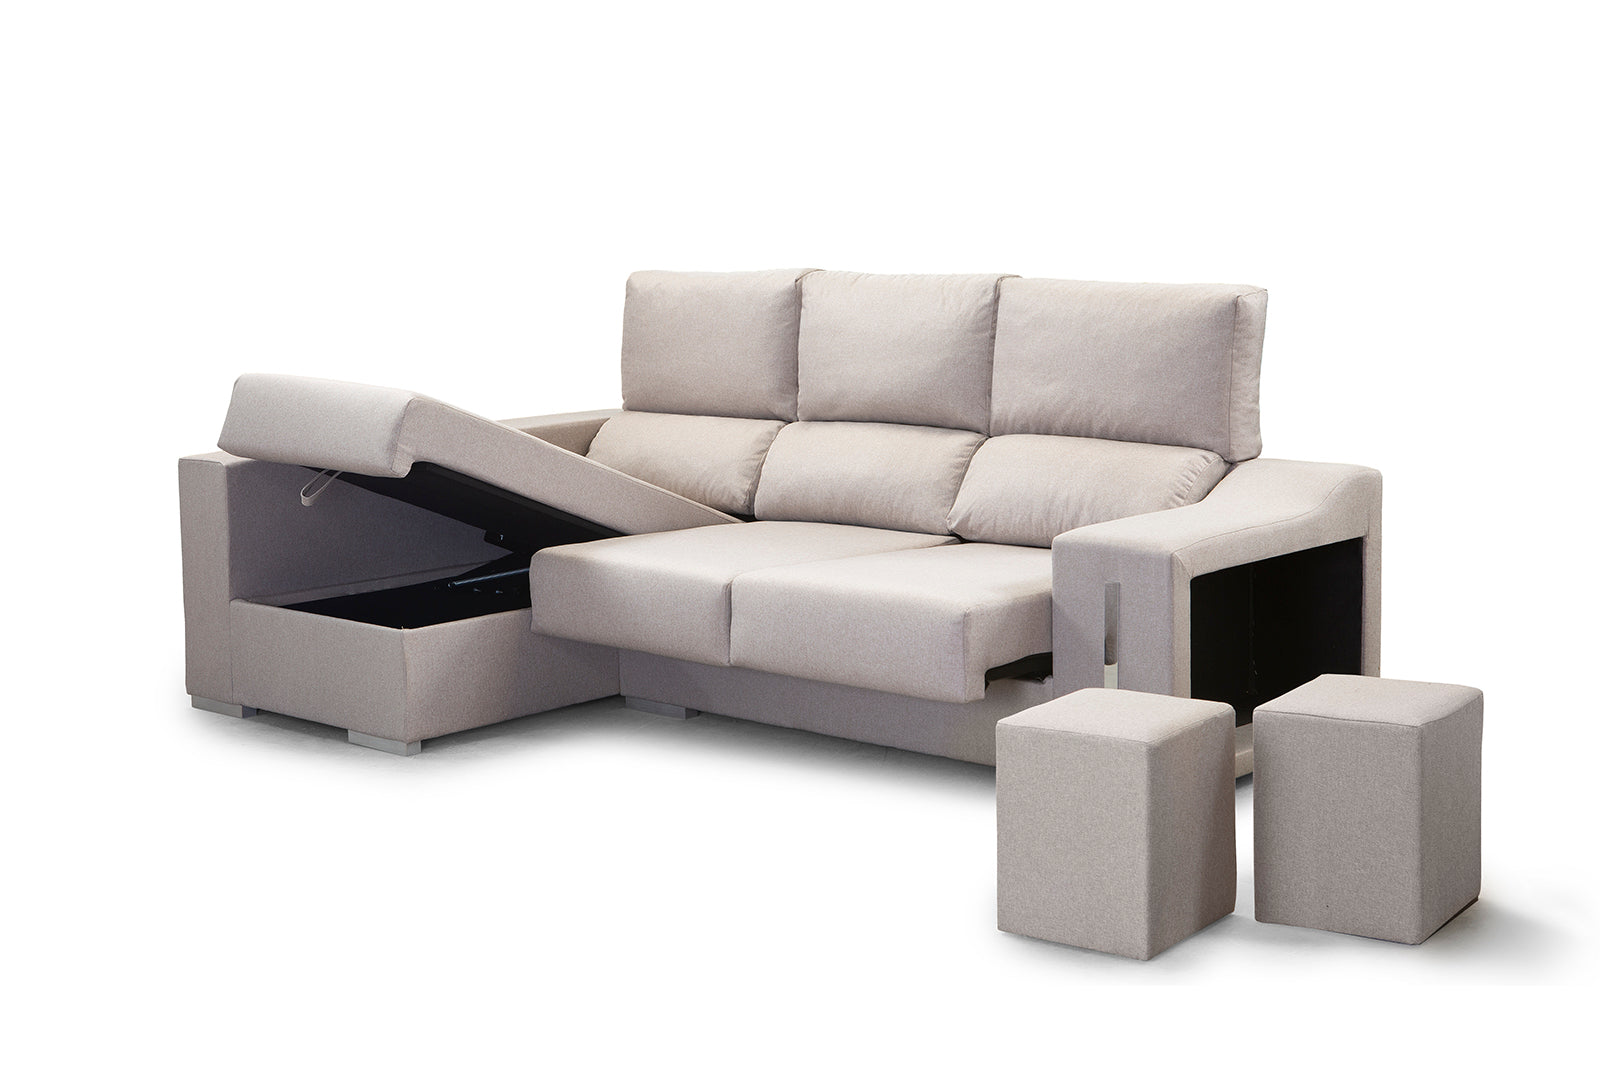 Sofa chaise longue con arcón, asientos deslizantes y respaldos reclinables + 2 taburetes - Biarritzi